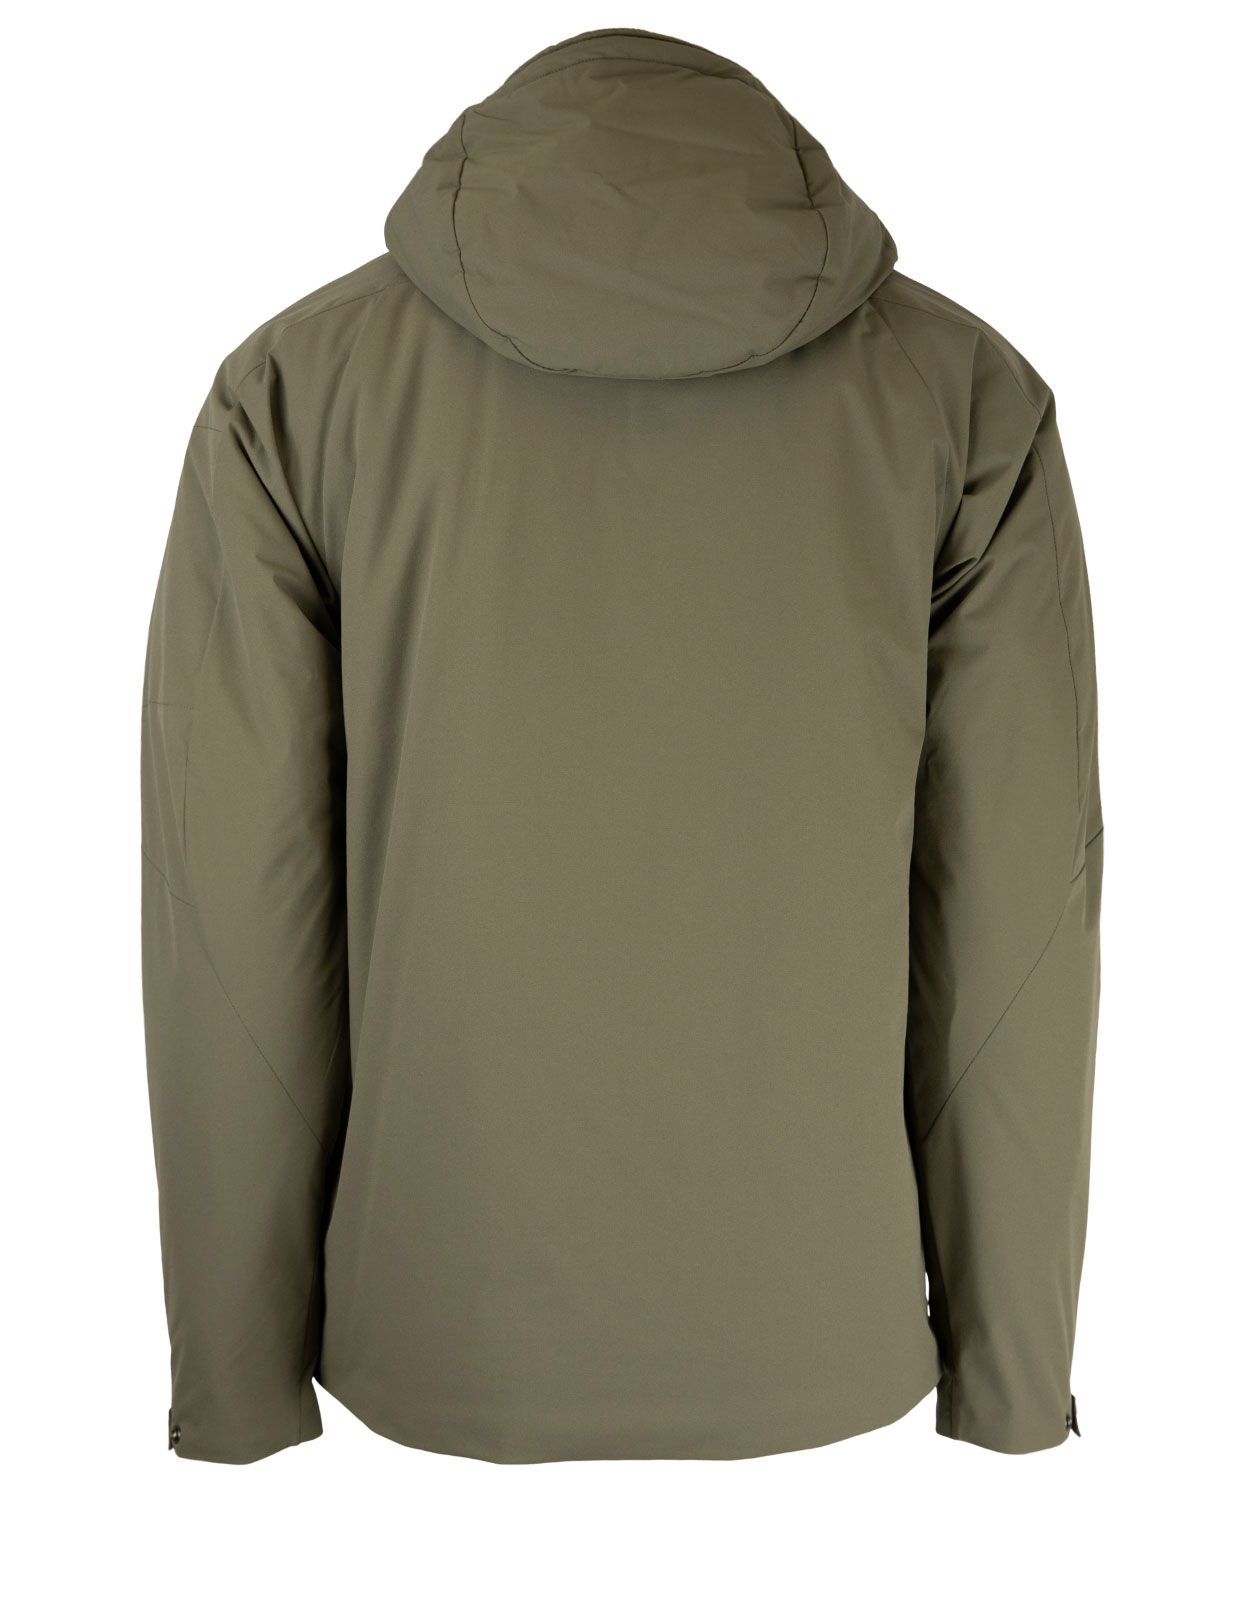 Pro-Tek Hooded Jacket Olive Green Stl 50